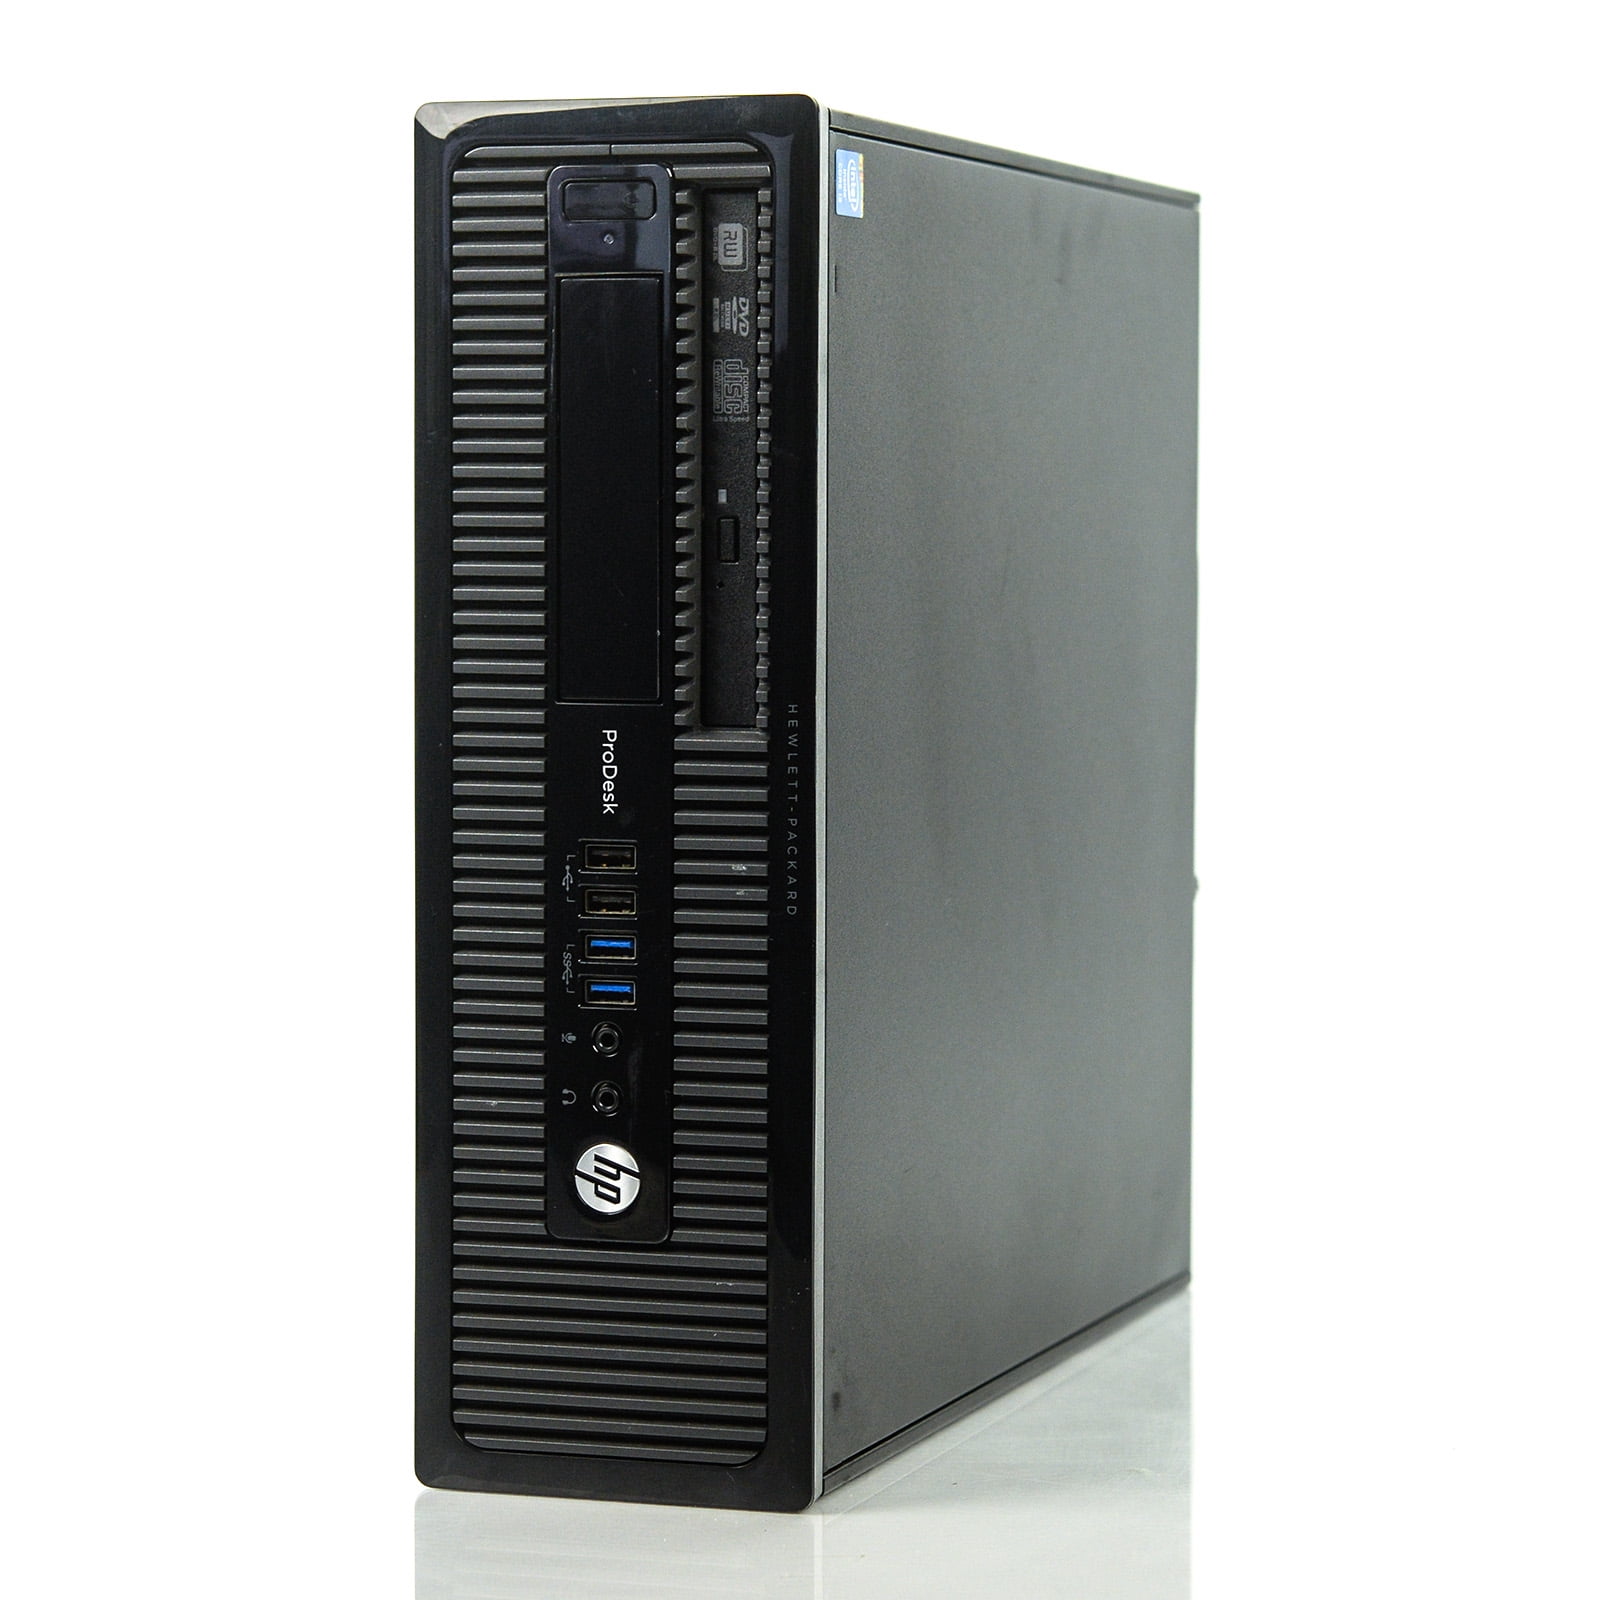 Computadora HP 205 G1 All-in-One, Procesador AMD E1-2500 (1.4 GHz), Memoria  4 GB DDR3, D.D. de 500 GB, DVD±R/RW DL, Video RADEON HD 8240, Windows 8.1  (64 Bits), Pantalla LED de 18.5.